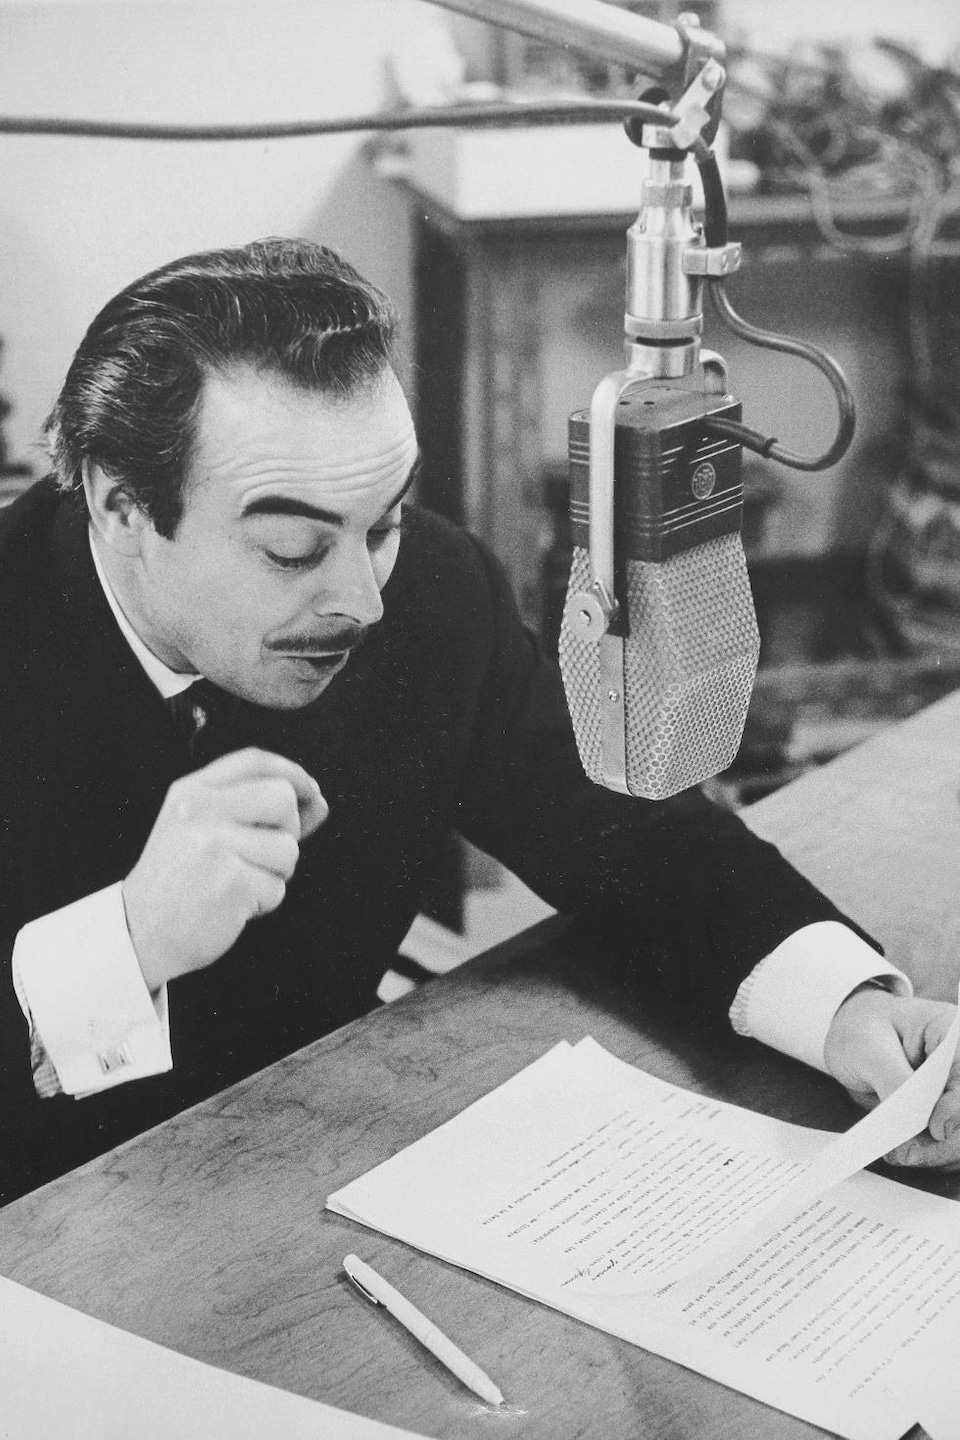 Henri Bergeron lit un conte dans un studio radio avec un visage particulièrement expressif.